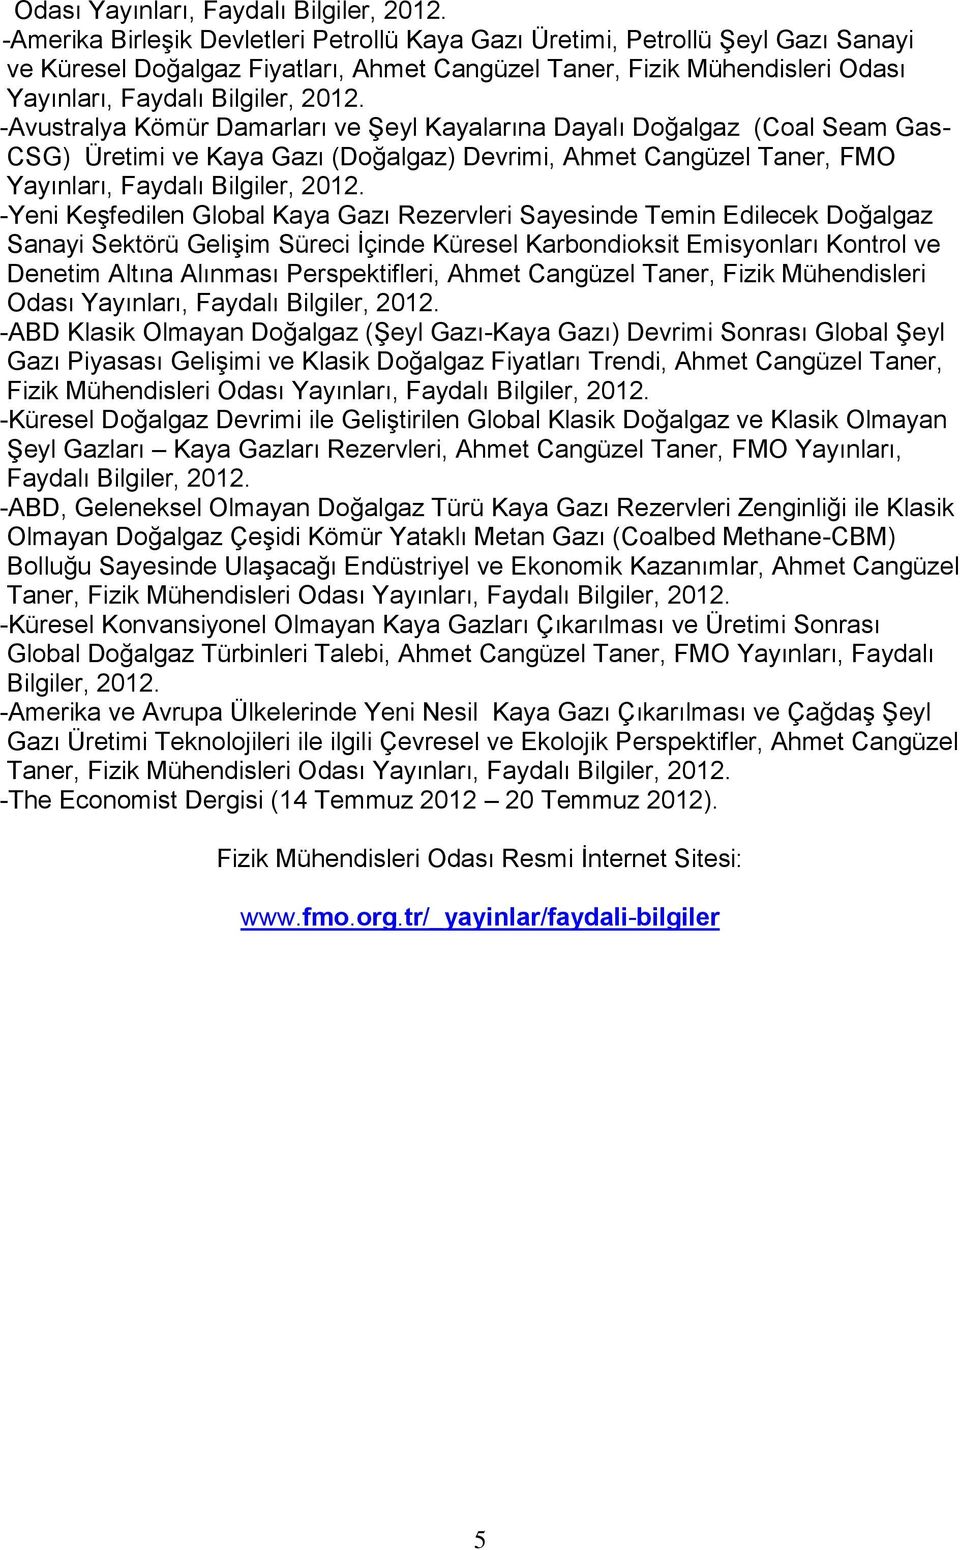 Kayalarına Dayalı Doğalgaz (Coal Seam Gas- CSG) Üretimi ve Kaya Gazı (Doğalgaz) Devrimi, Ahmet Cangüzel Taner, FMO Yayınları, Faydalı Bilgiler, 2012.